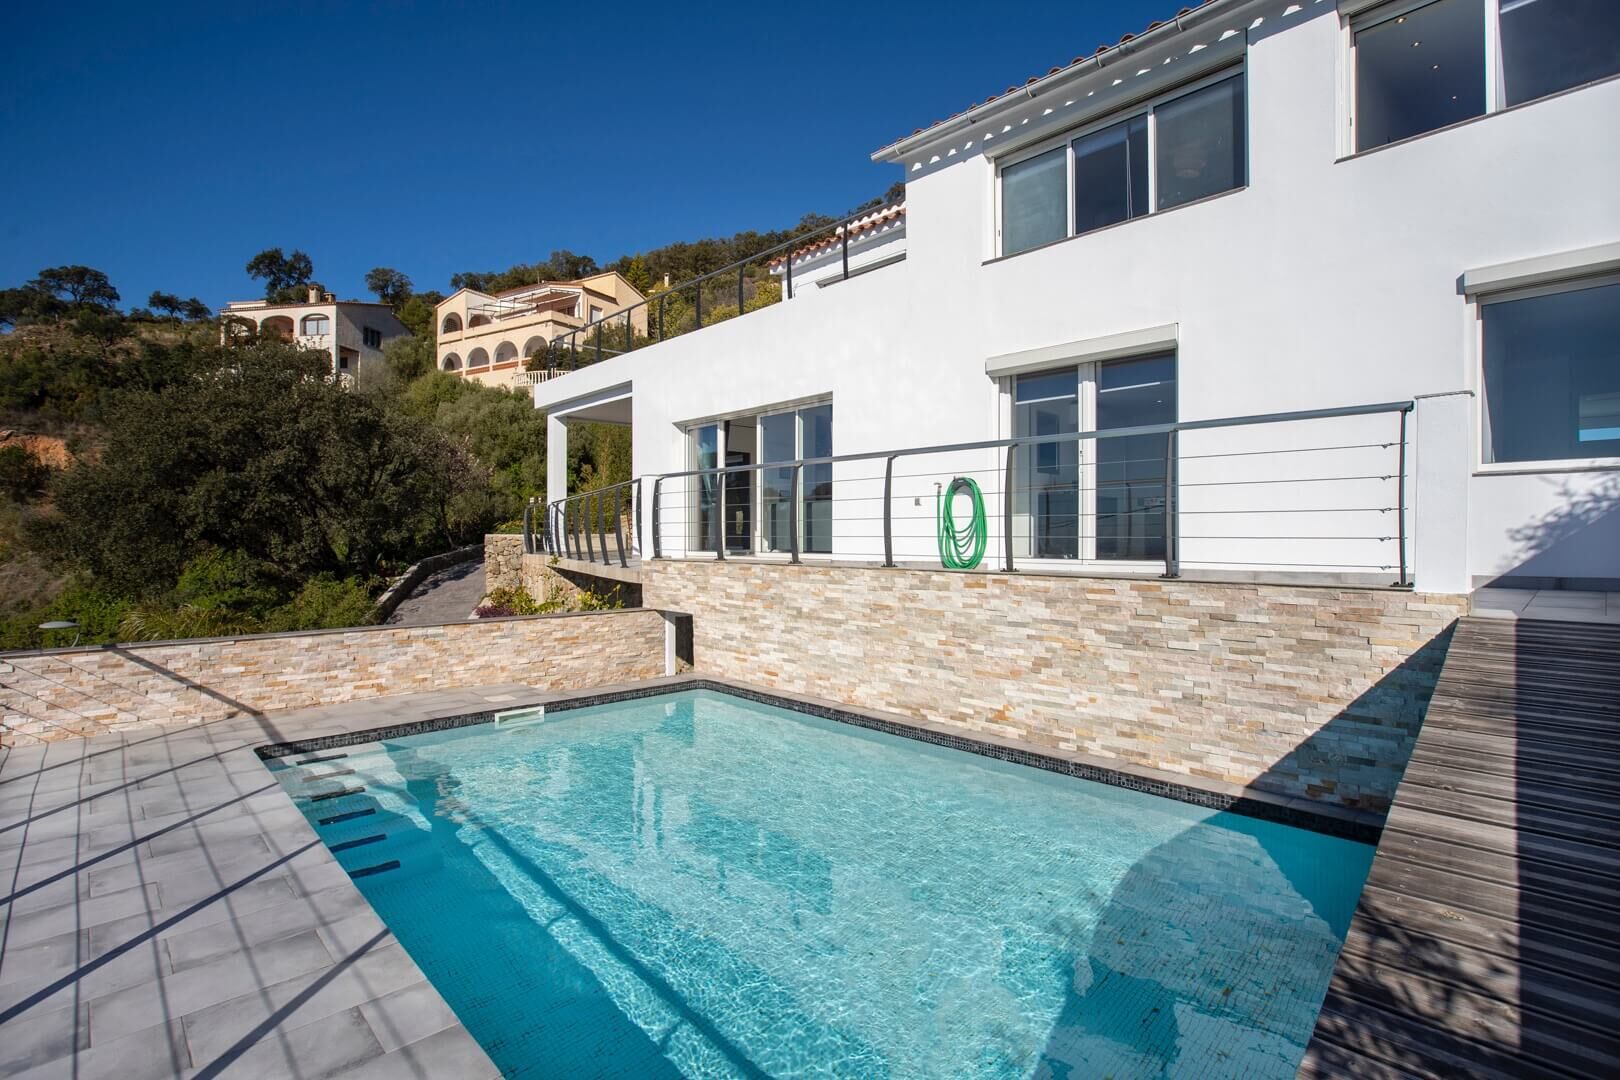 Compleet gerenoveerde villa met zwembad en zeezicht